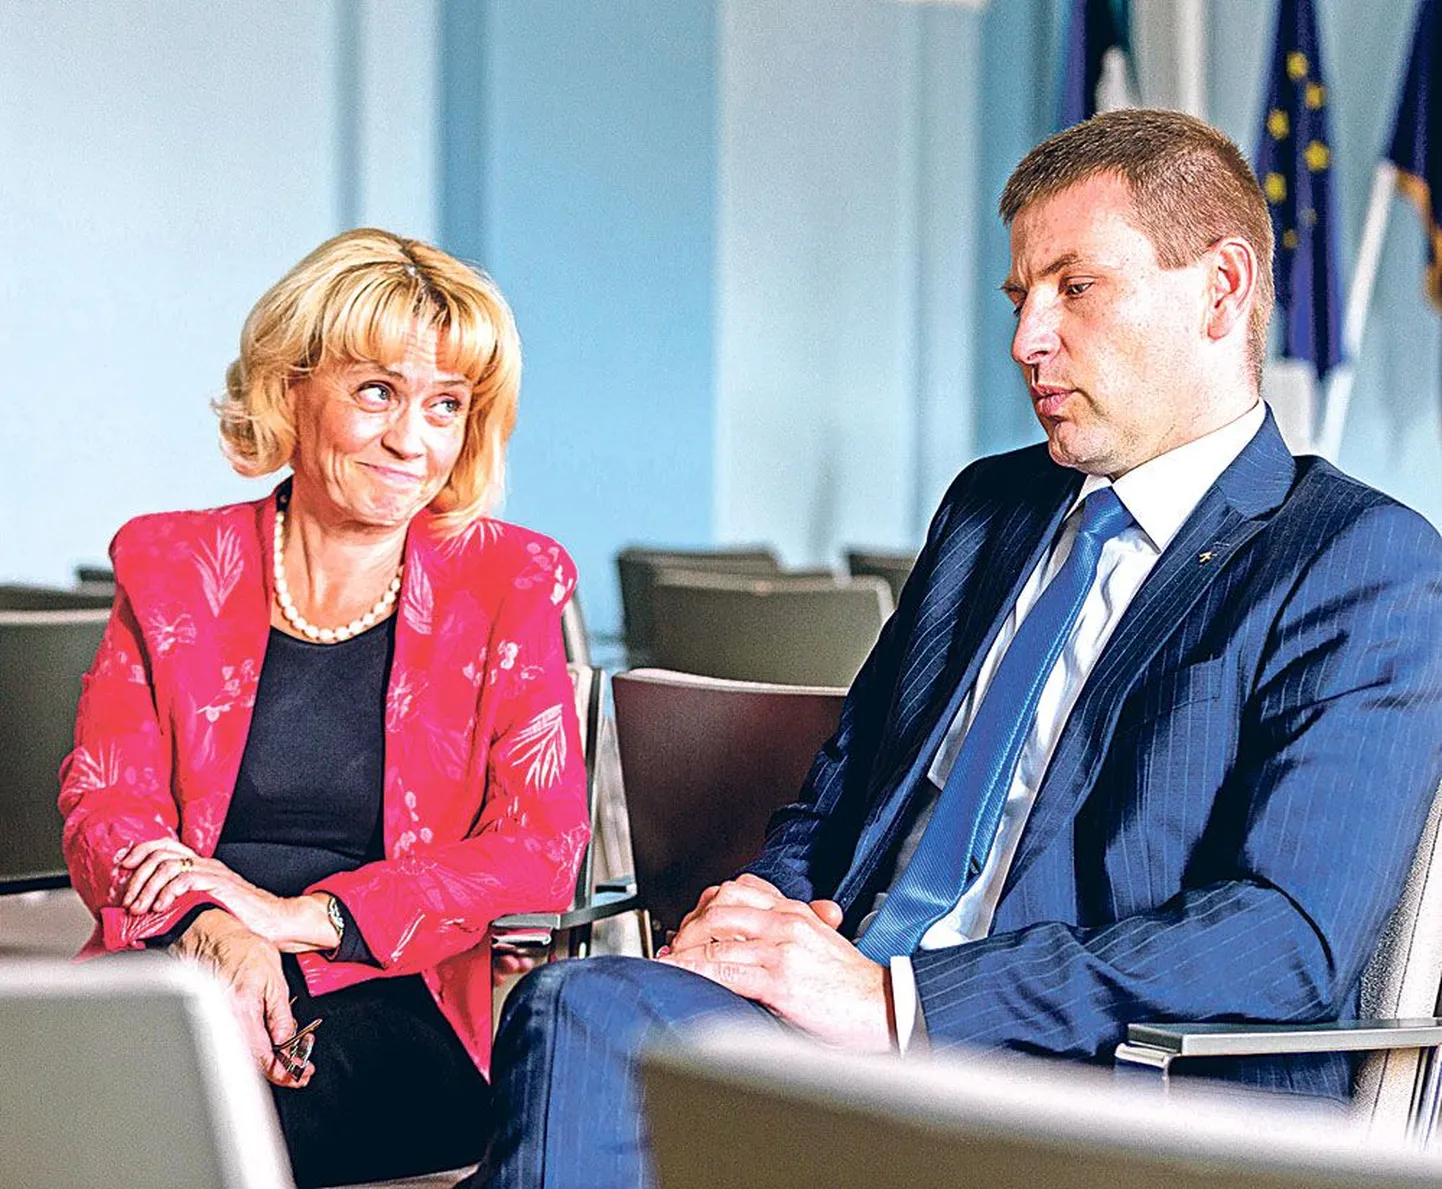 Soome siseministri Päivi Räsäneni ja tema Eesti ametikaaslase Hanno Pevkuri sõnul on võimalik, et Venemaa kohtleb kahte riiki erinevalt.